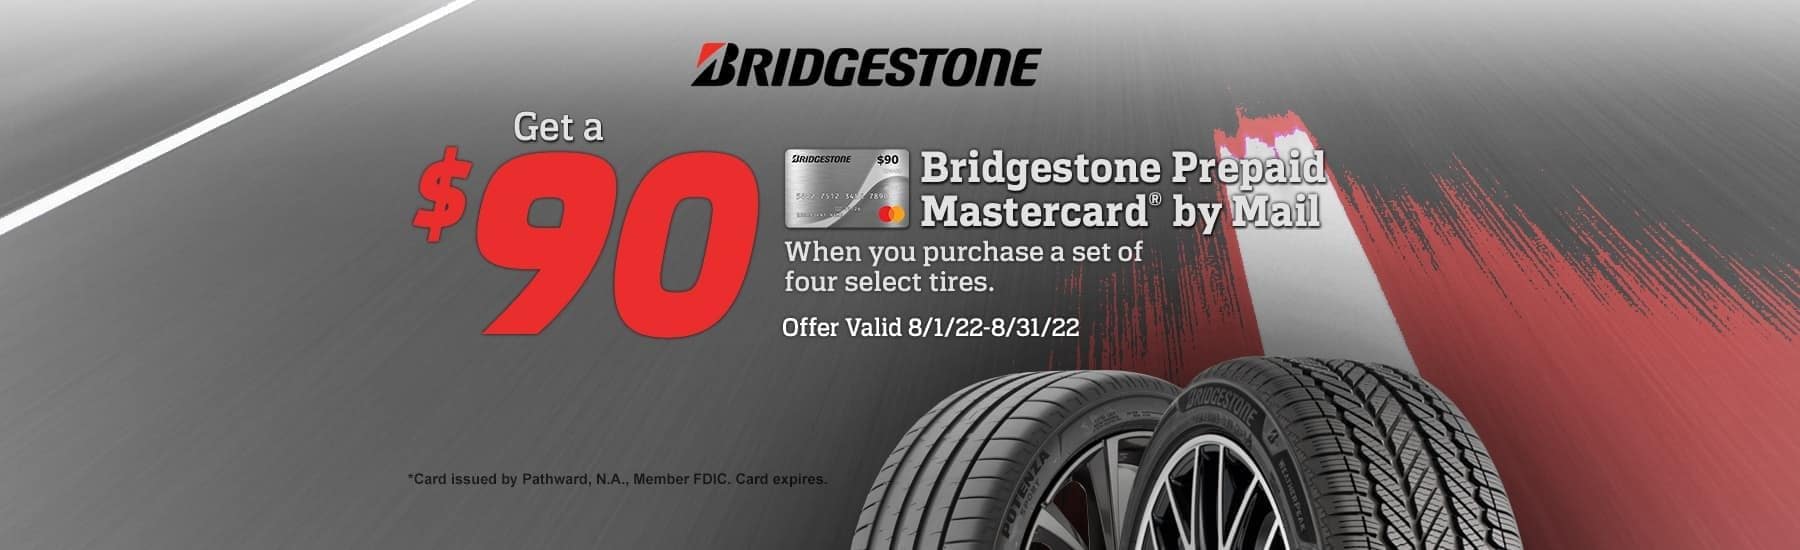 bridgestone-tires-offer